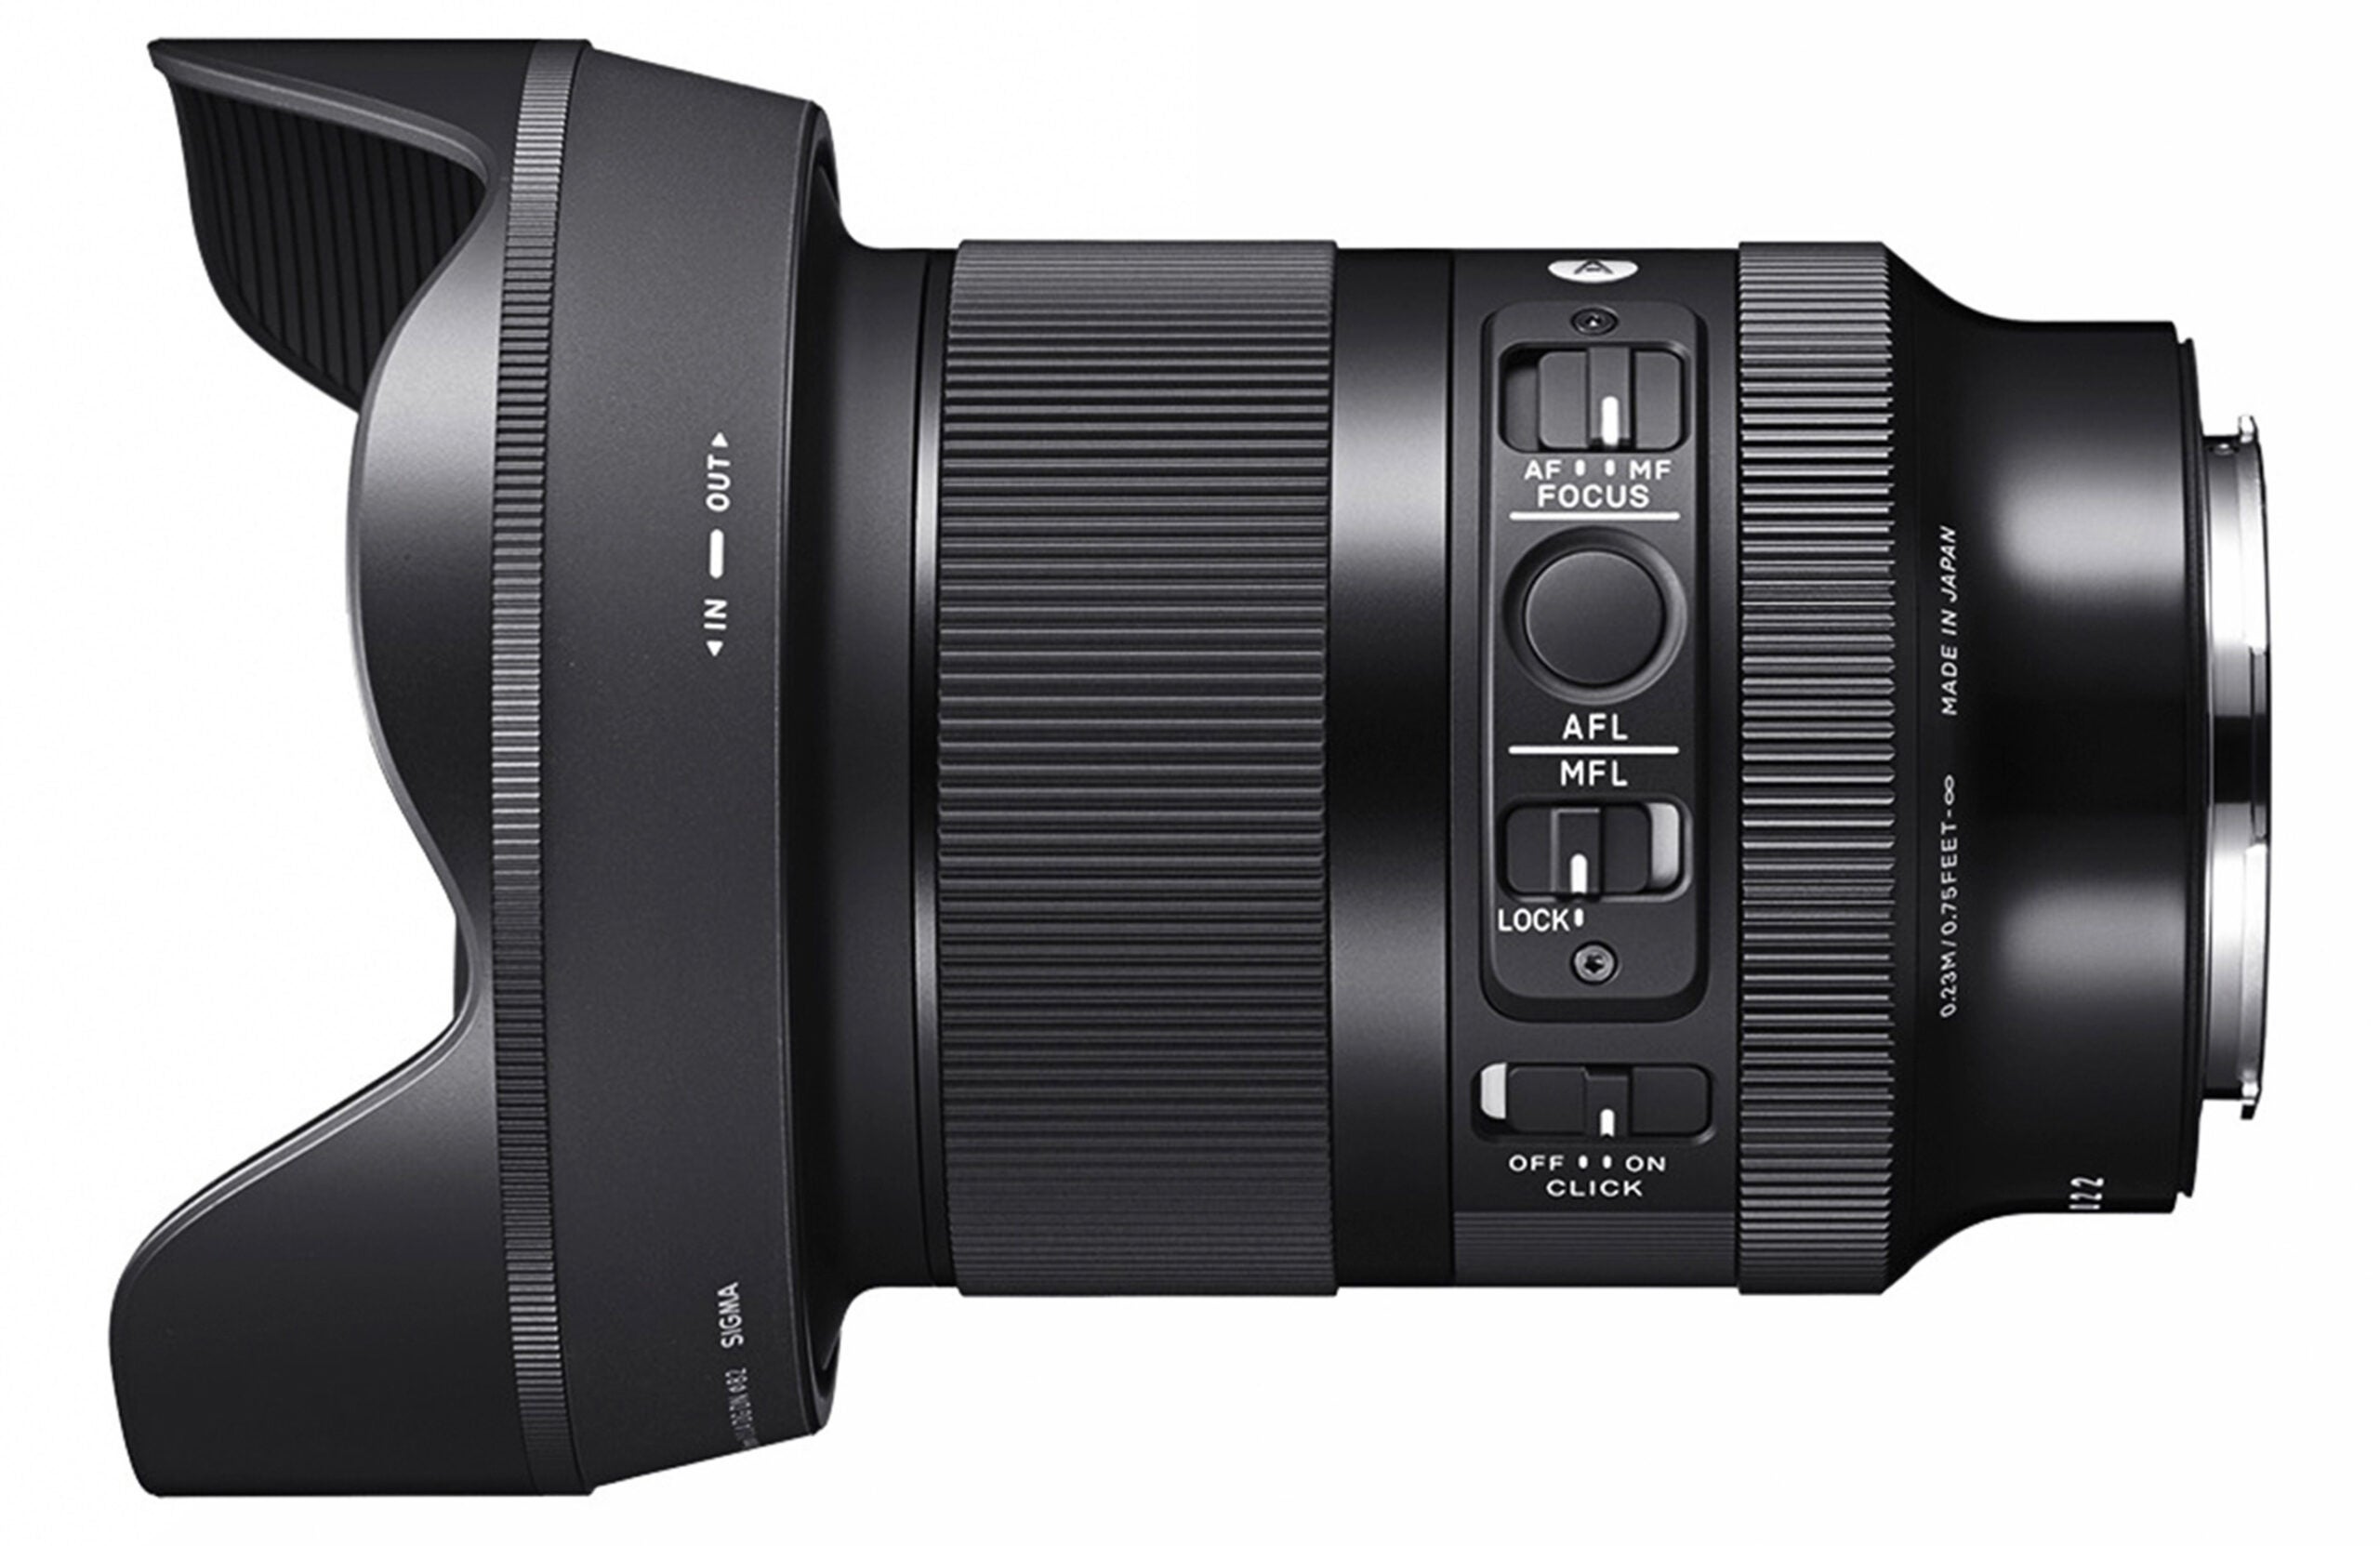 The new Sigma 24mm f/1.4 full-frame lens